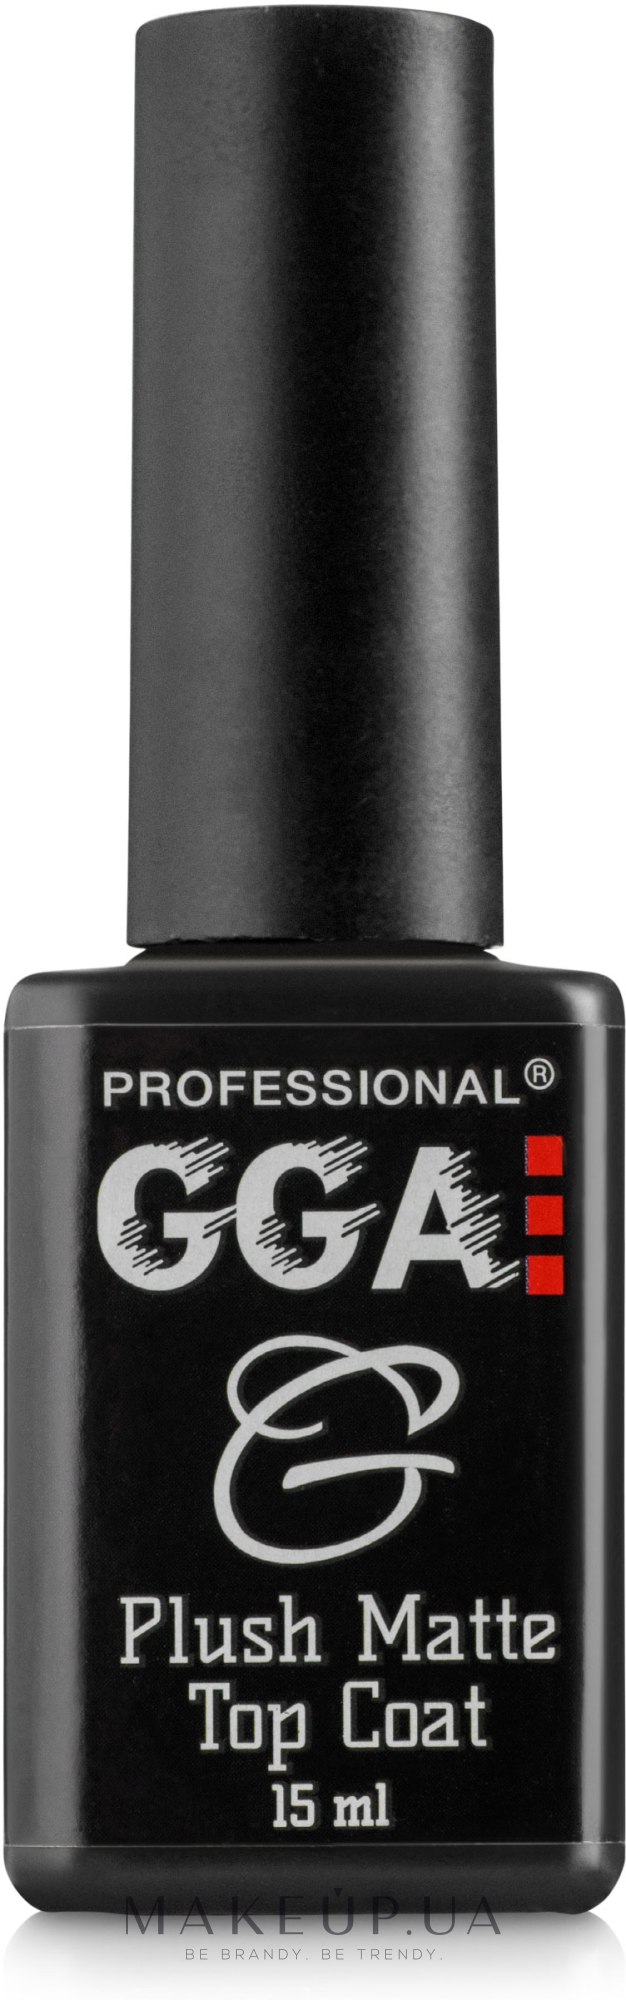 Матовый топ для гель-лака - GGA Professional Plush Matte Top Coat — фото 15ml